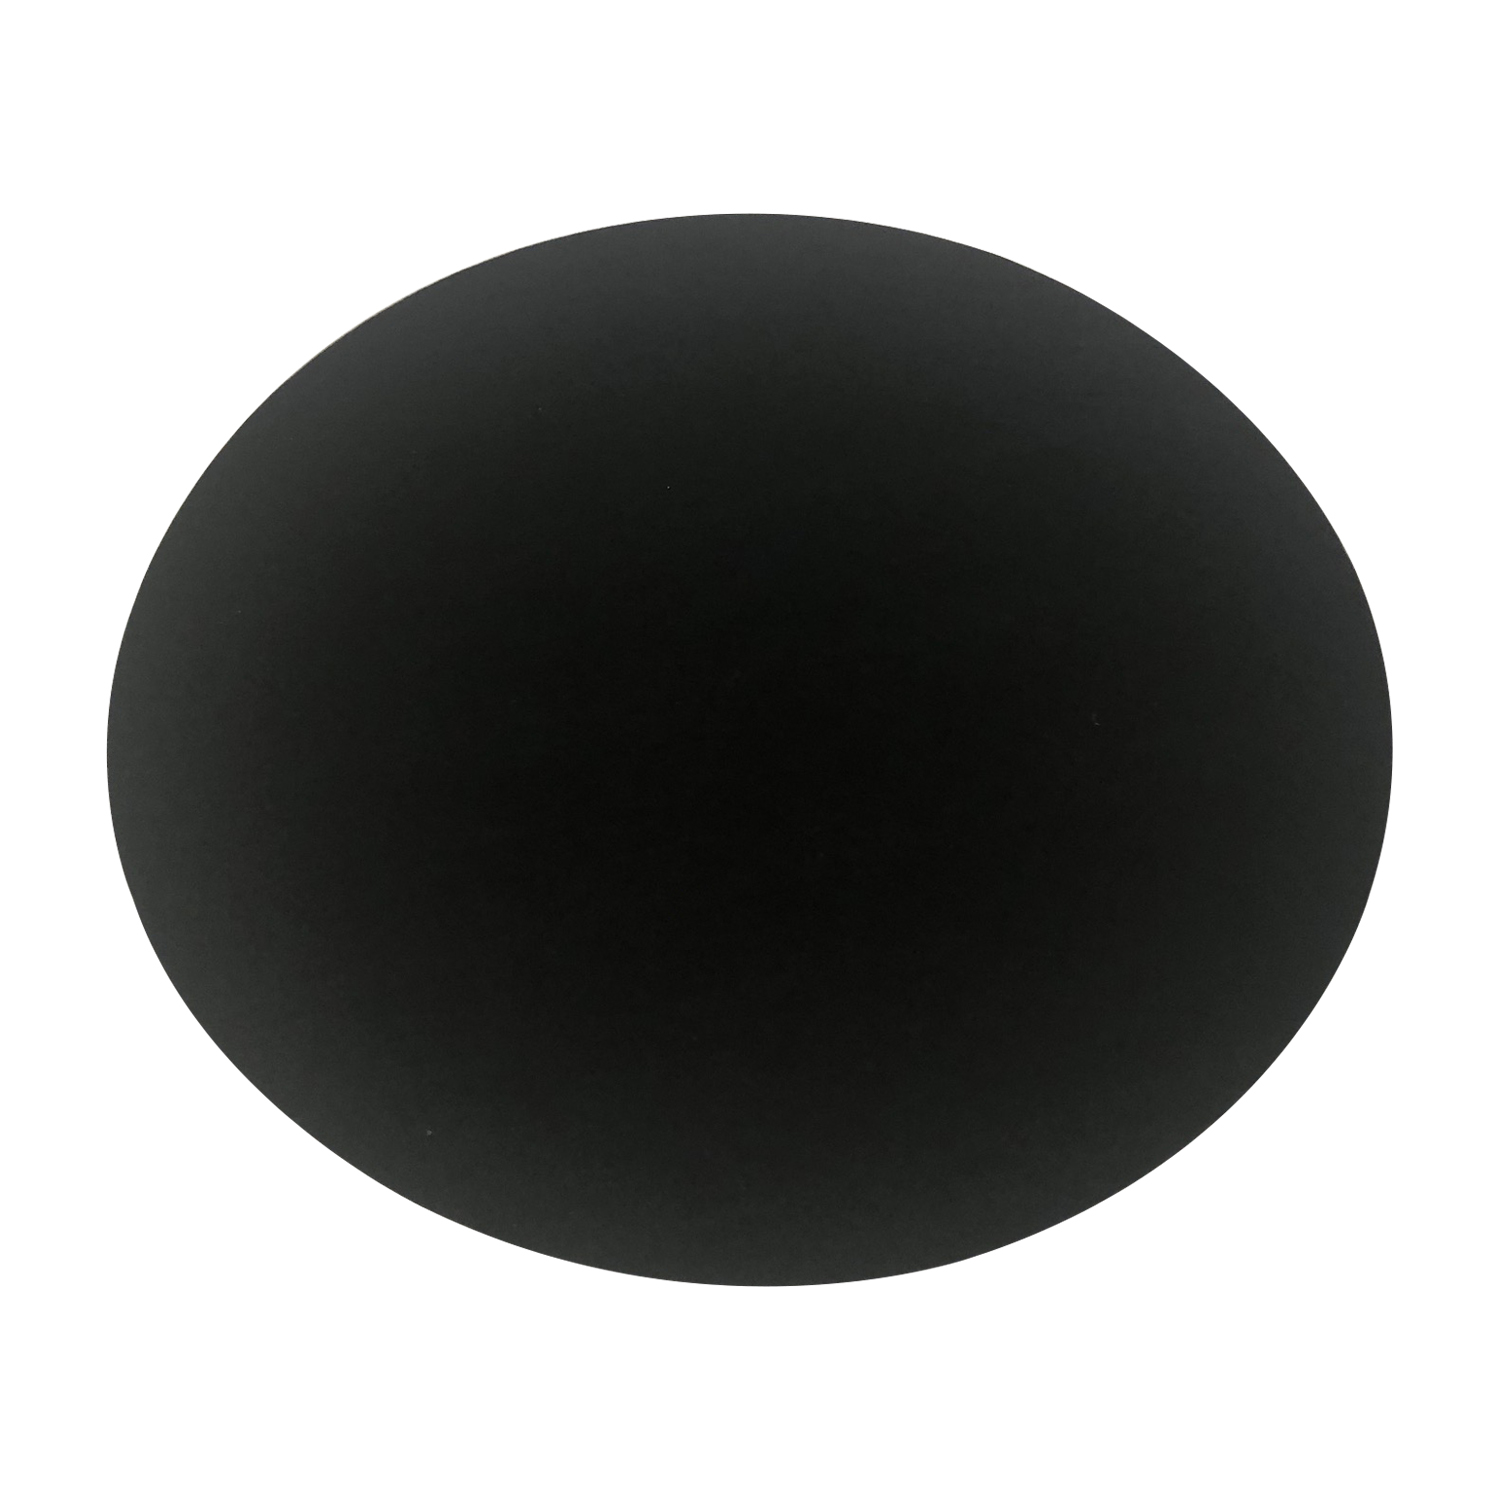 7EVEN Filz Auflage rund schwarz 33cm FIlzauflage